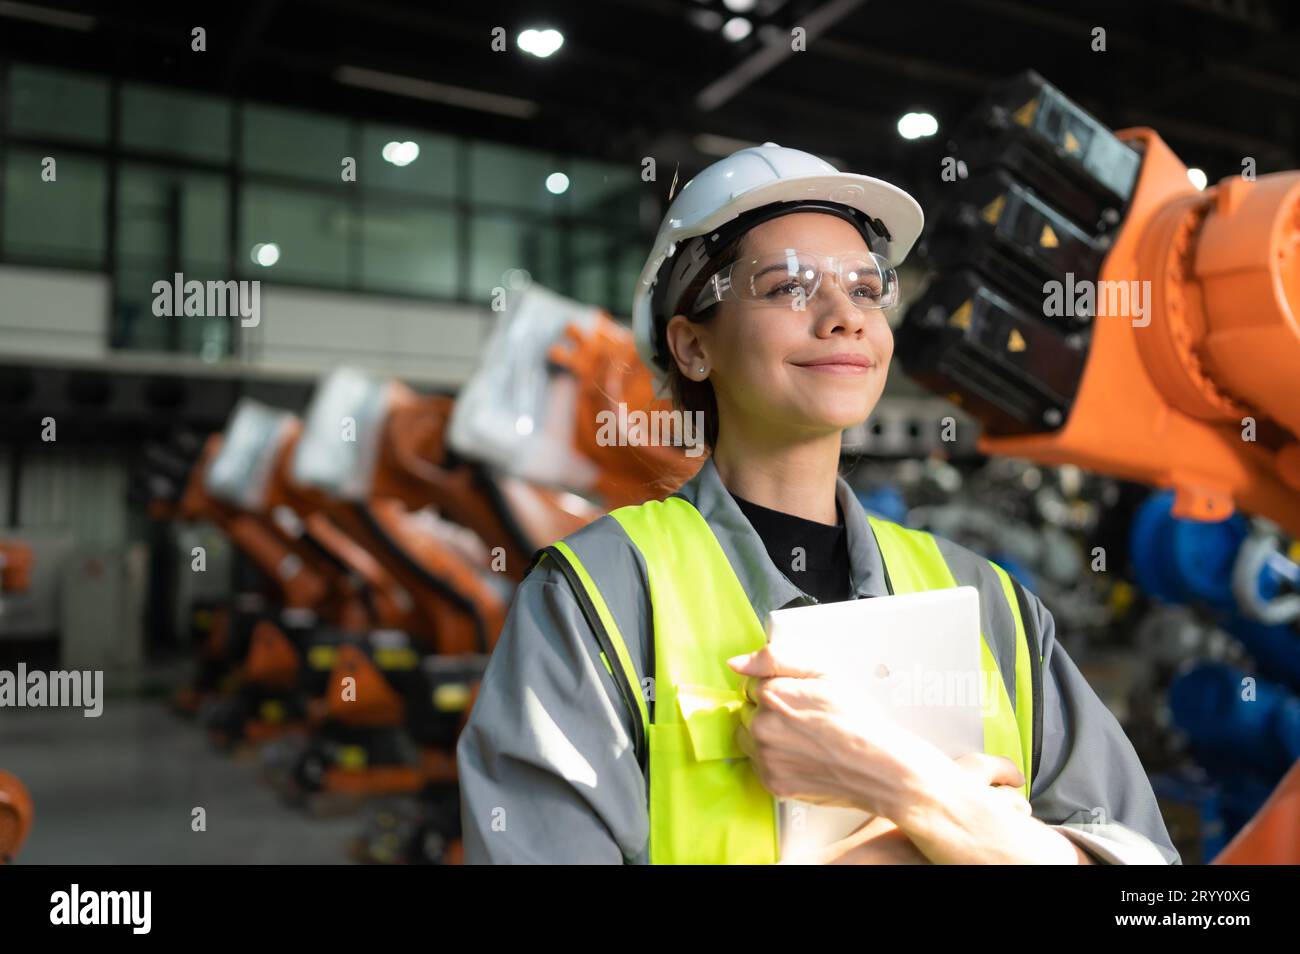 Ritratto di una donna ingegnere con la missione di controllare, testare, migliorare il software e calibrare il braccio robotico. Foto Stock